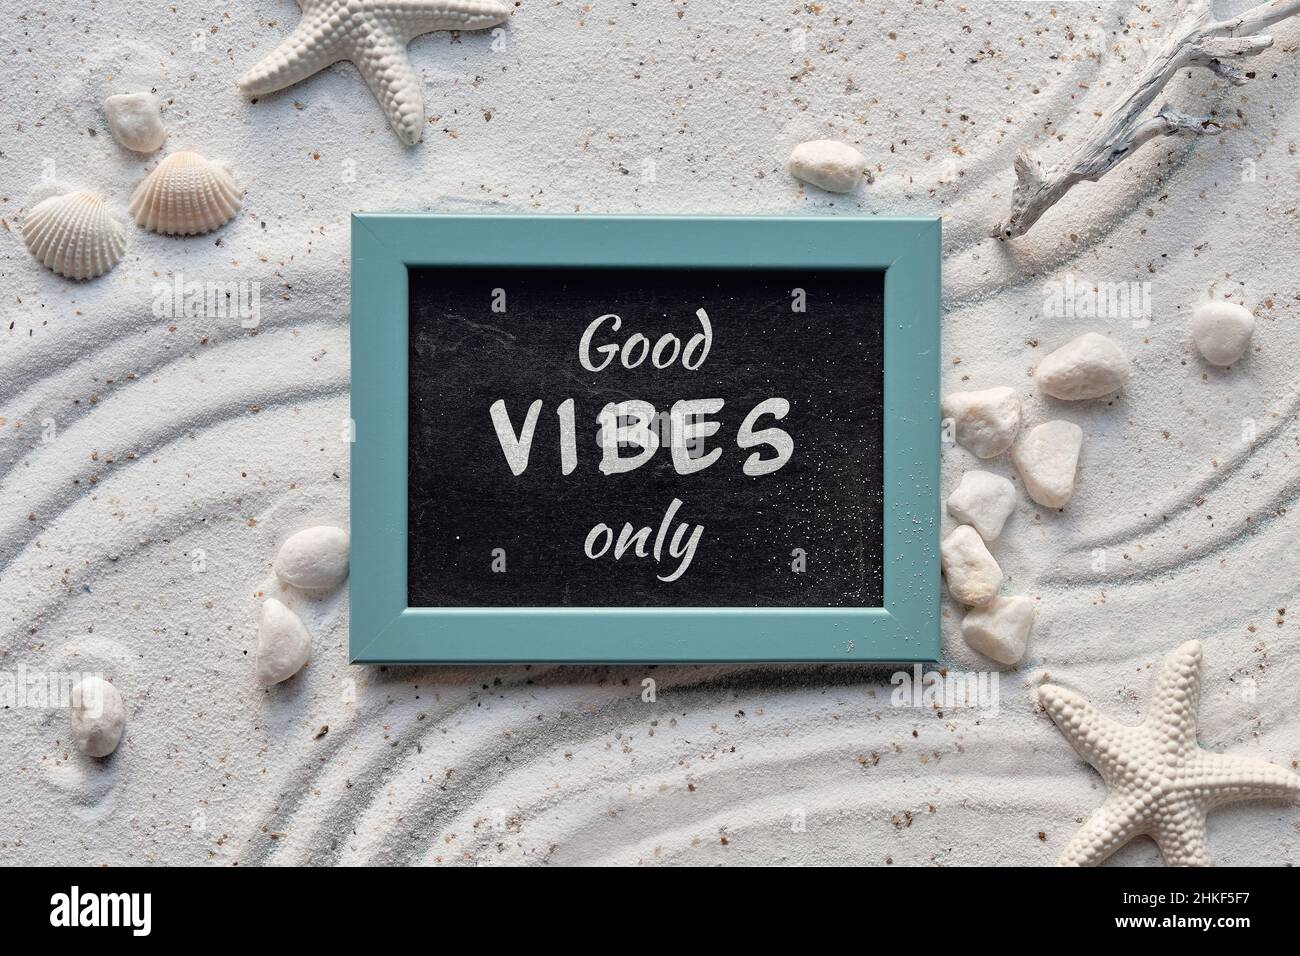 Hintergrund mit weißem Sand mit Muscheln, Seesterne. Gute Stimmung nur Text auf Tafel in mintgrünem Rahmen. Stockfoto